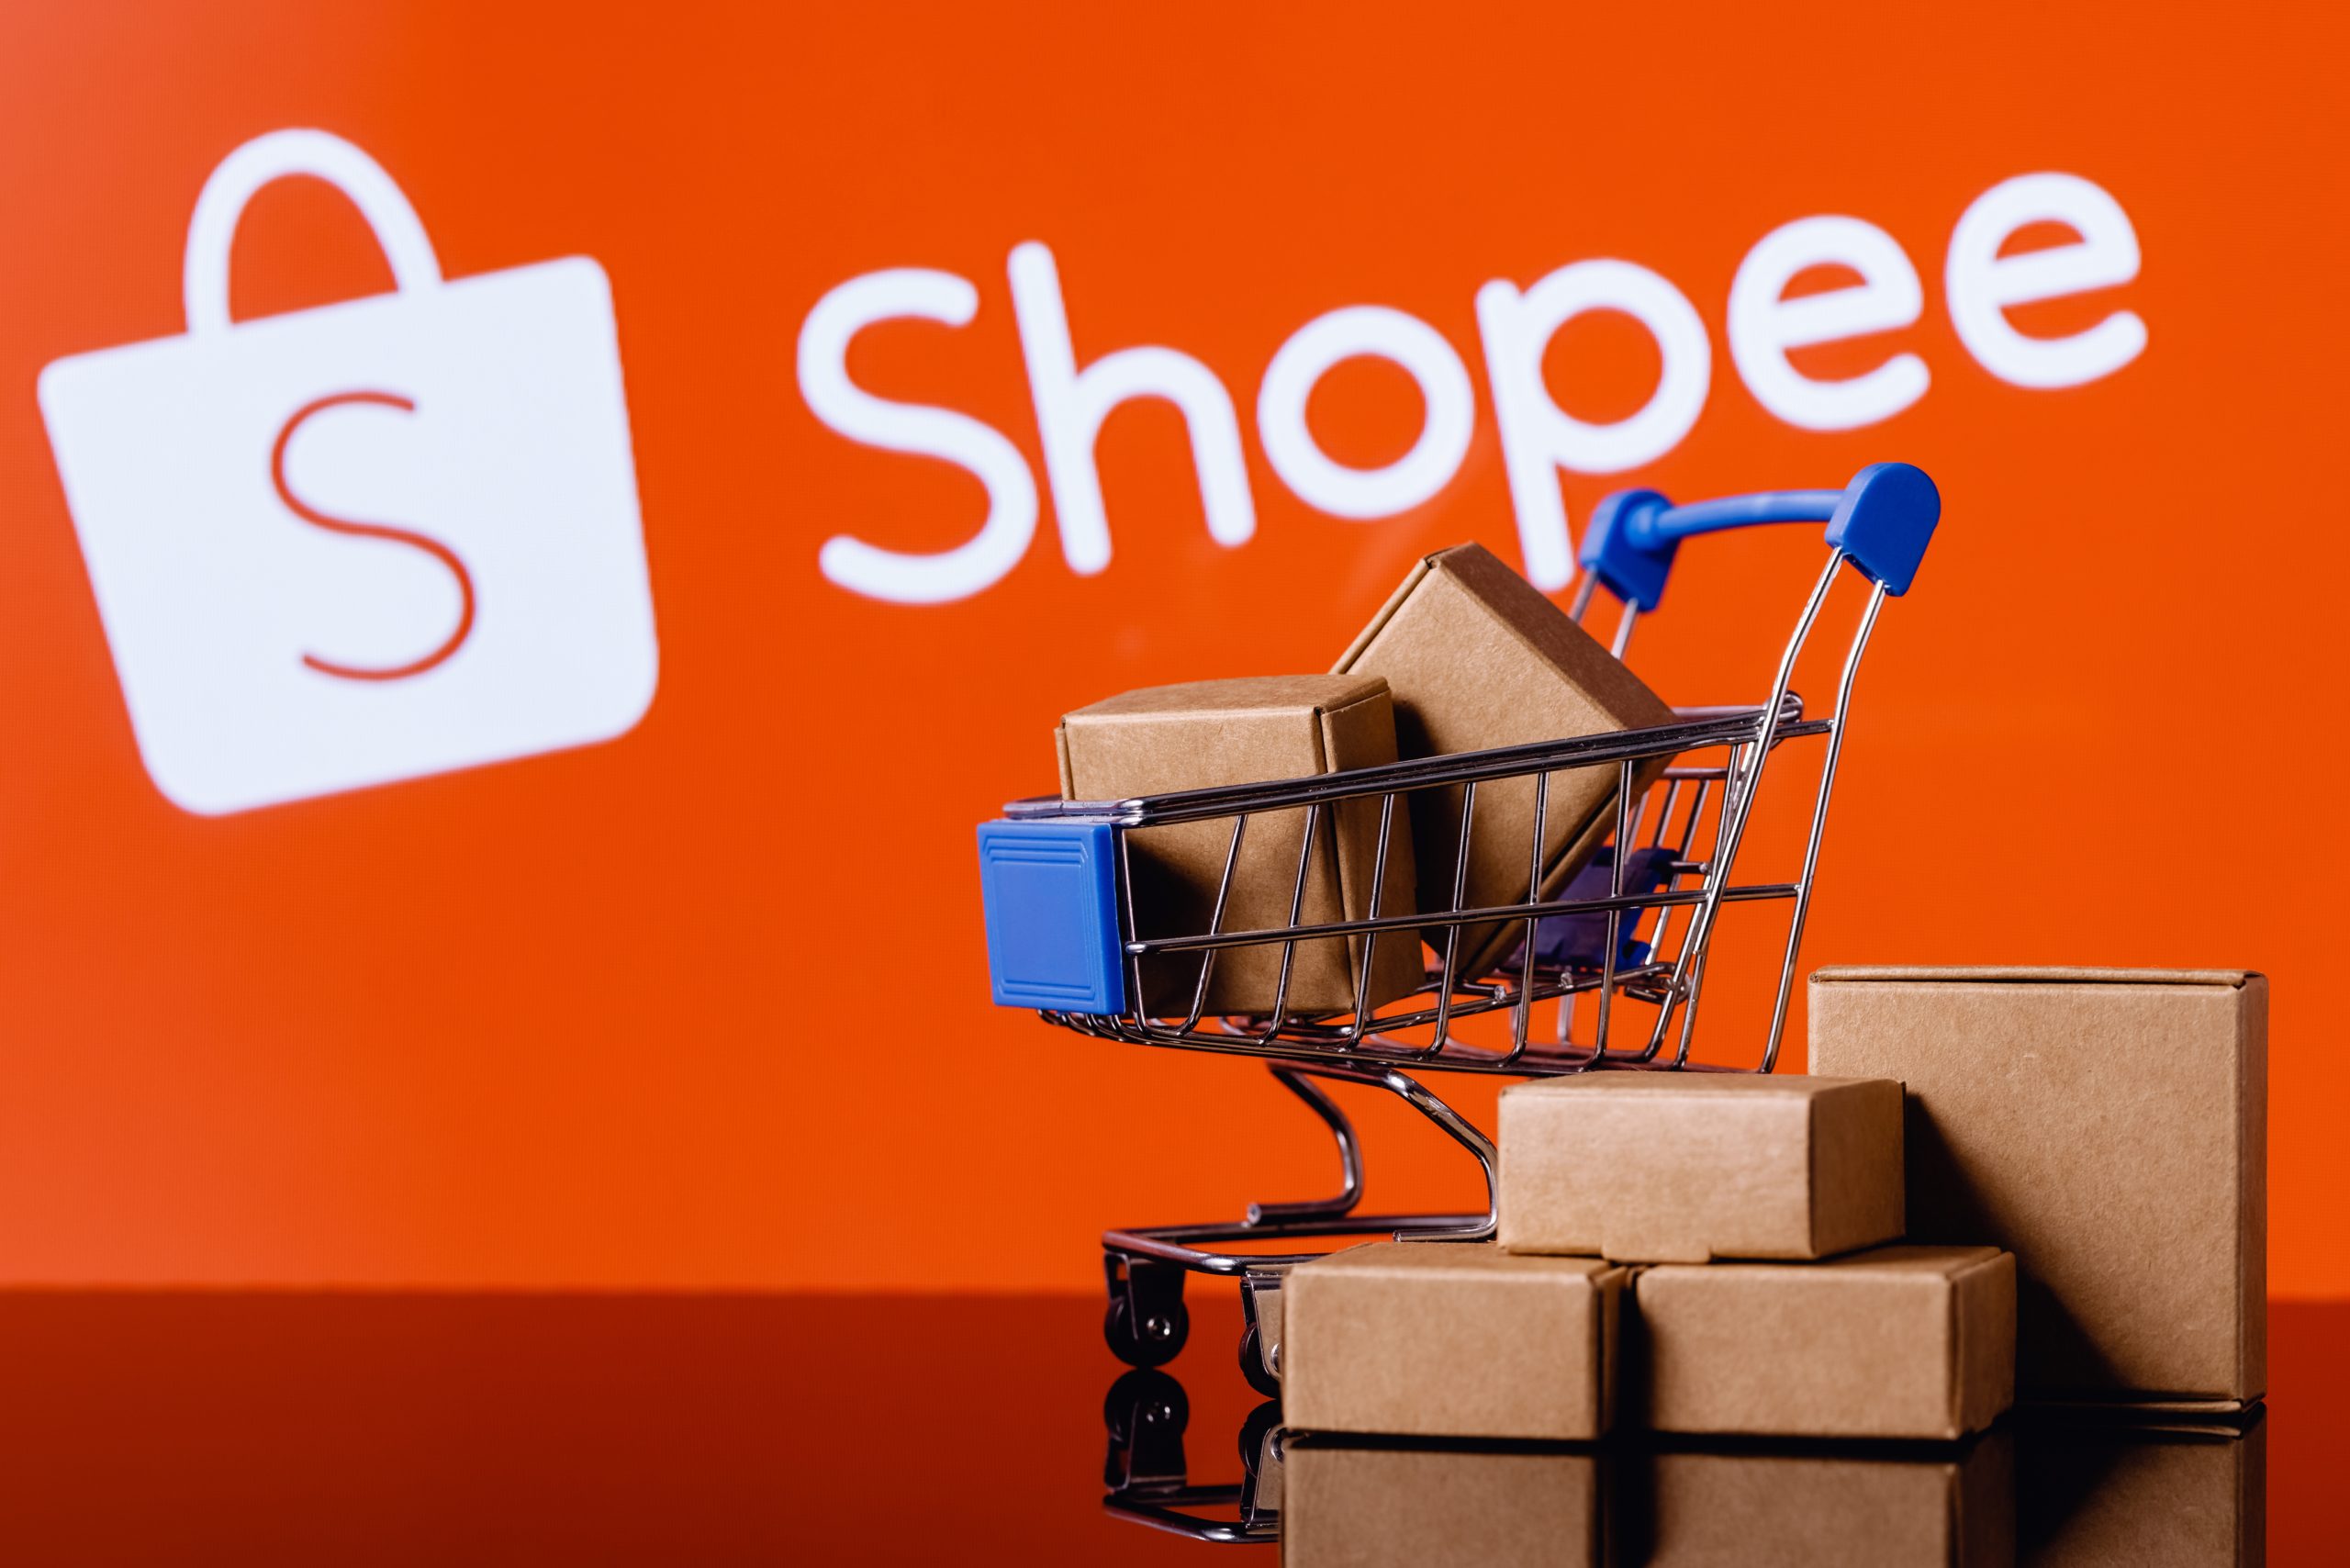 Mastercard e Shopee fecham parceria e clientes recebem desconto; veja como  ganhar